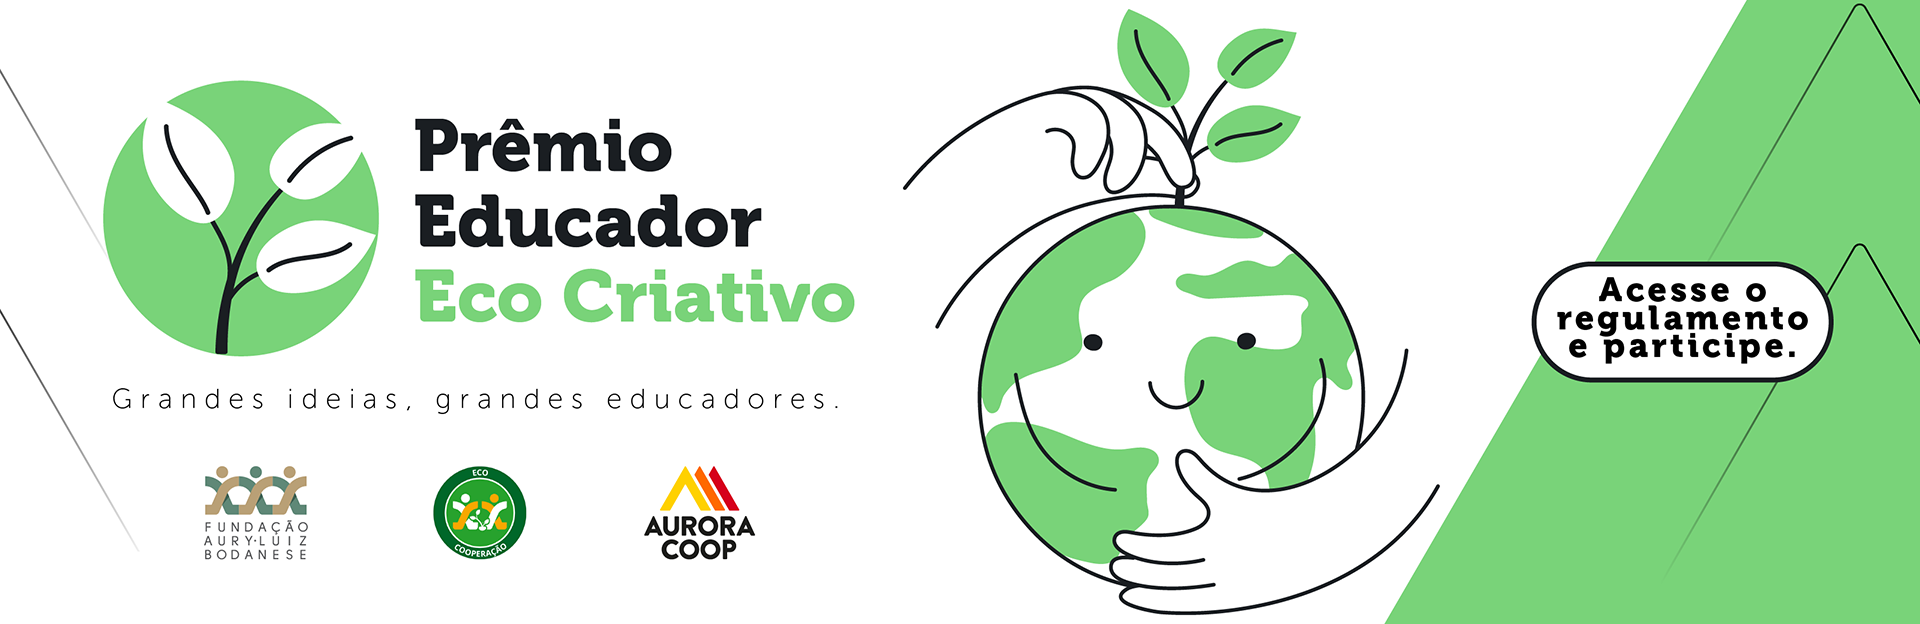 Prêmio Educador Eco Criativo